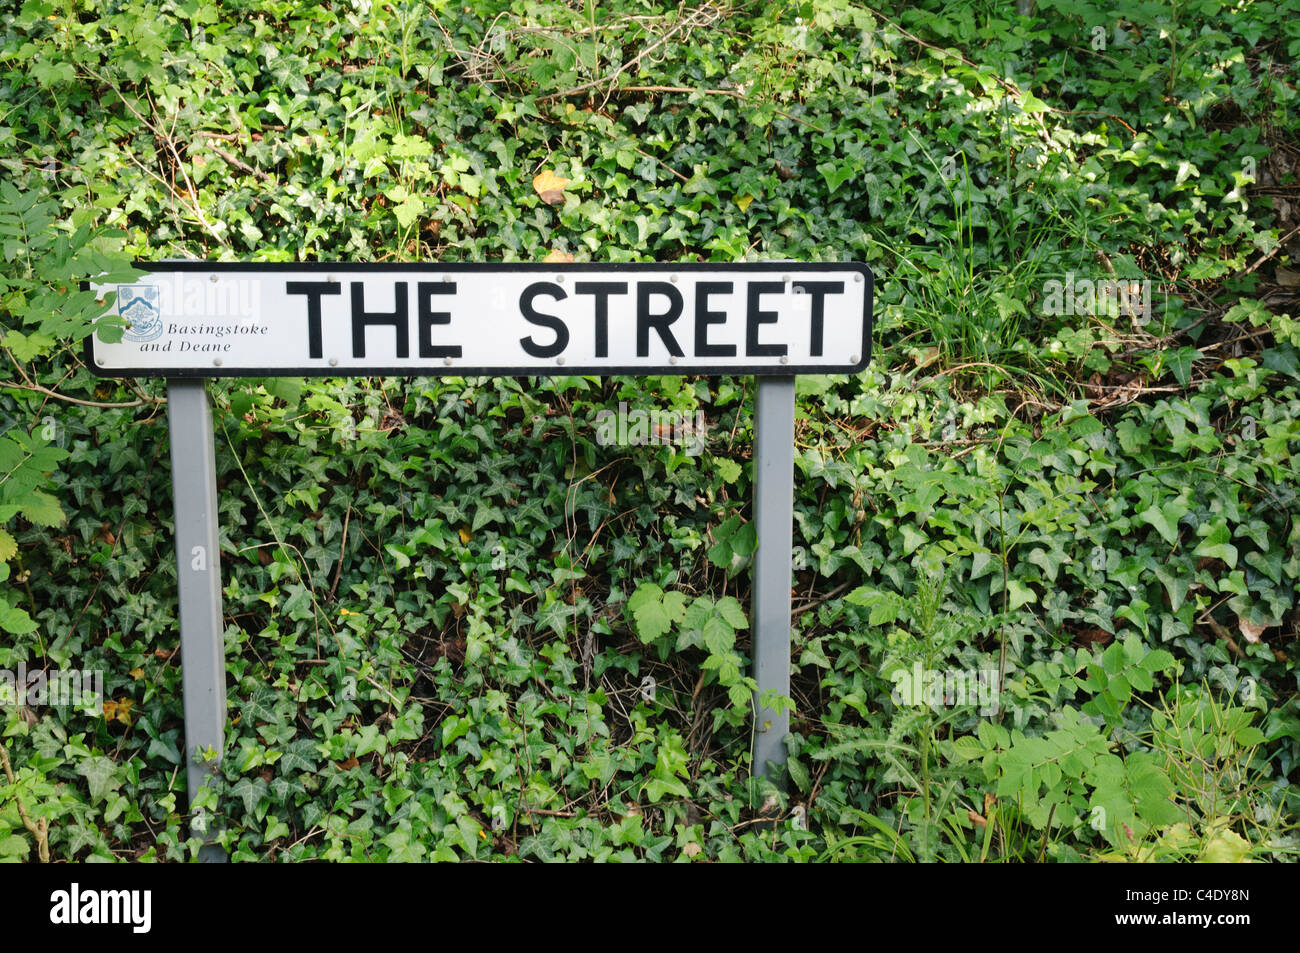 Straßenschild für eine Straße namens "The Street" Stockfoto